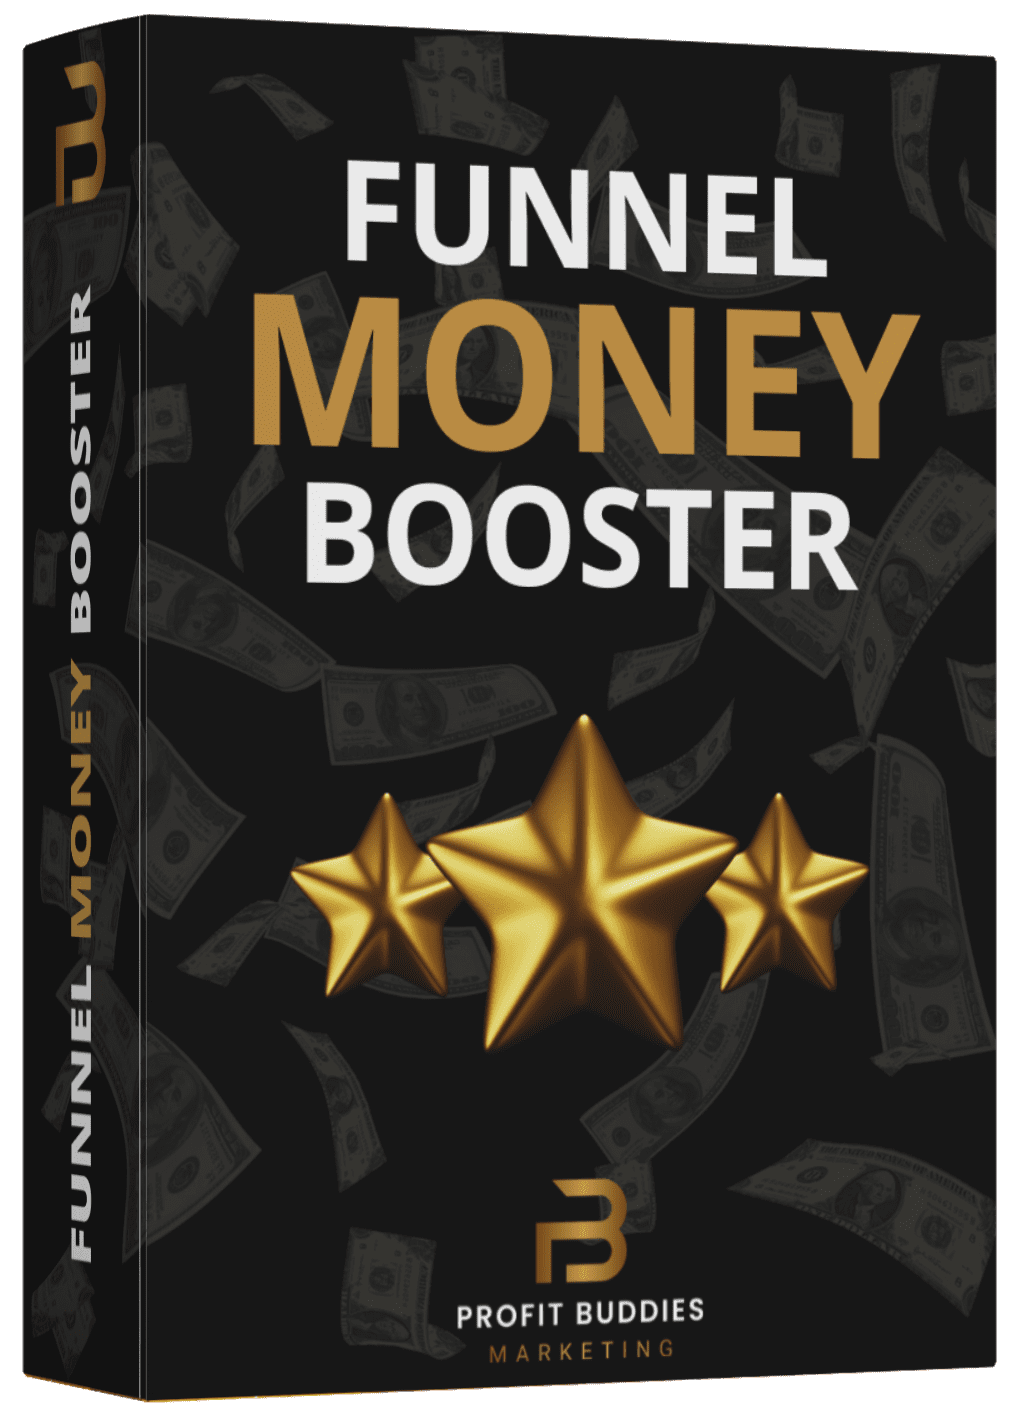 Der Funnel Money Booster Bild